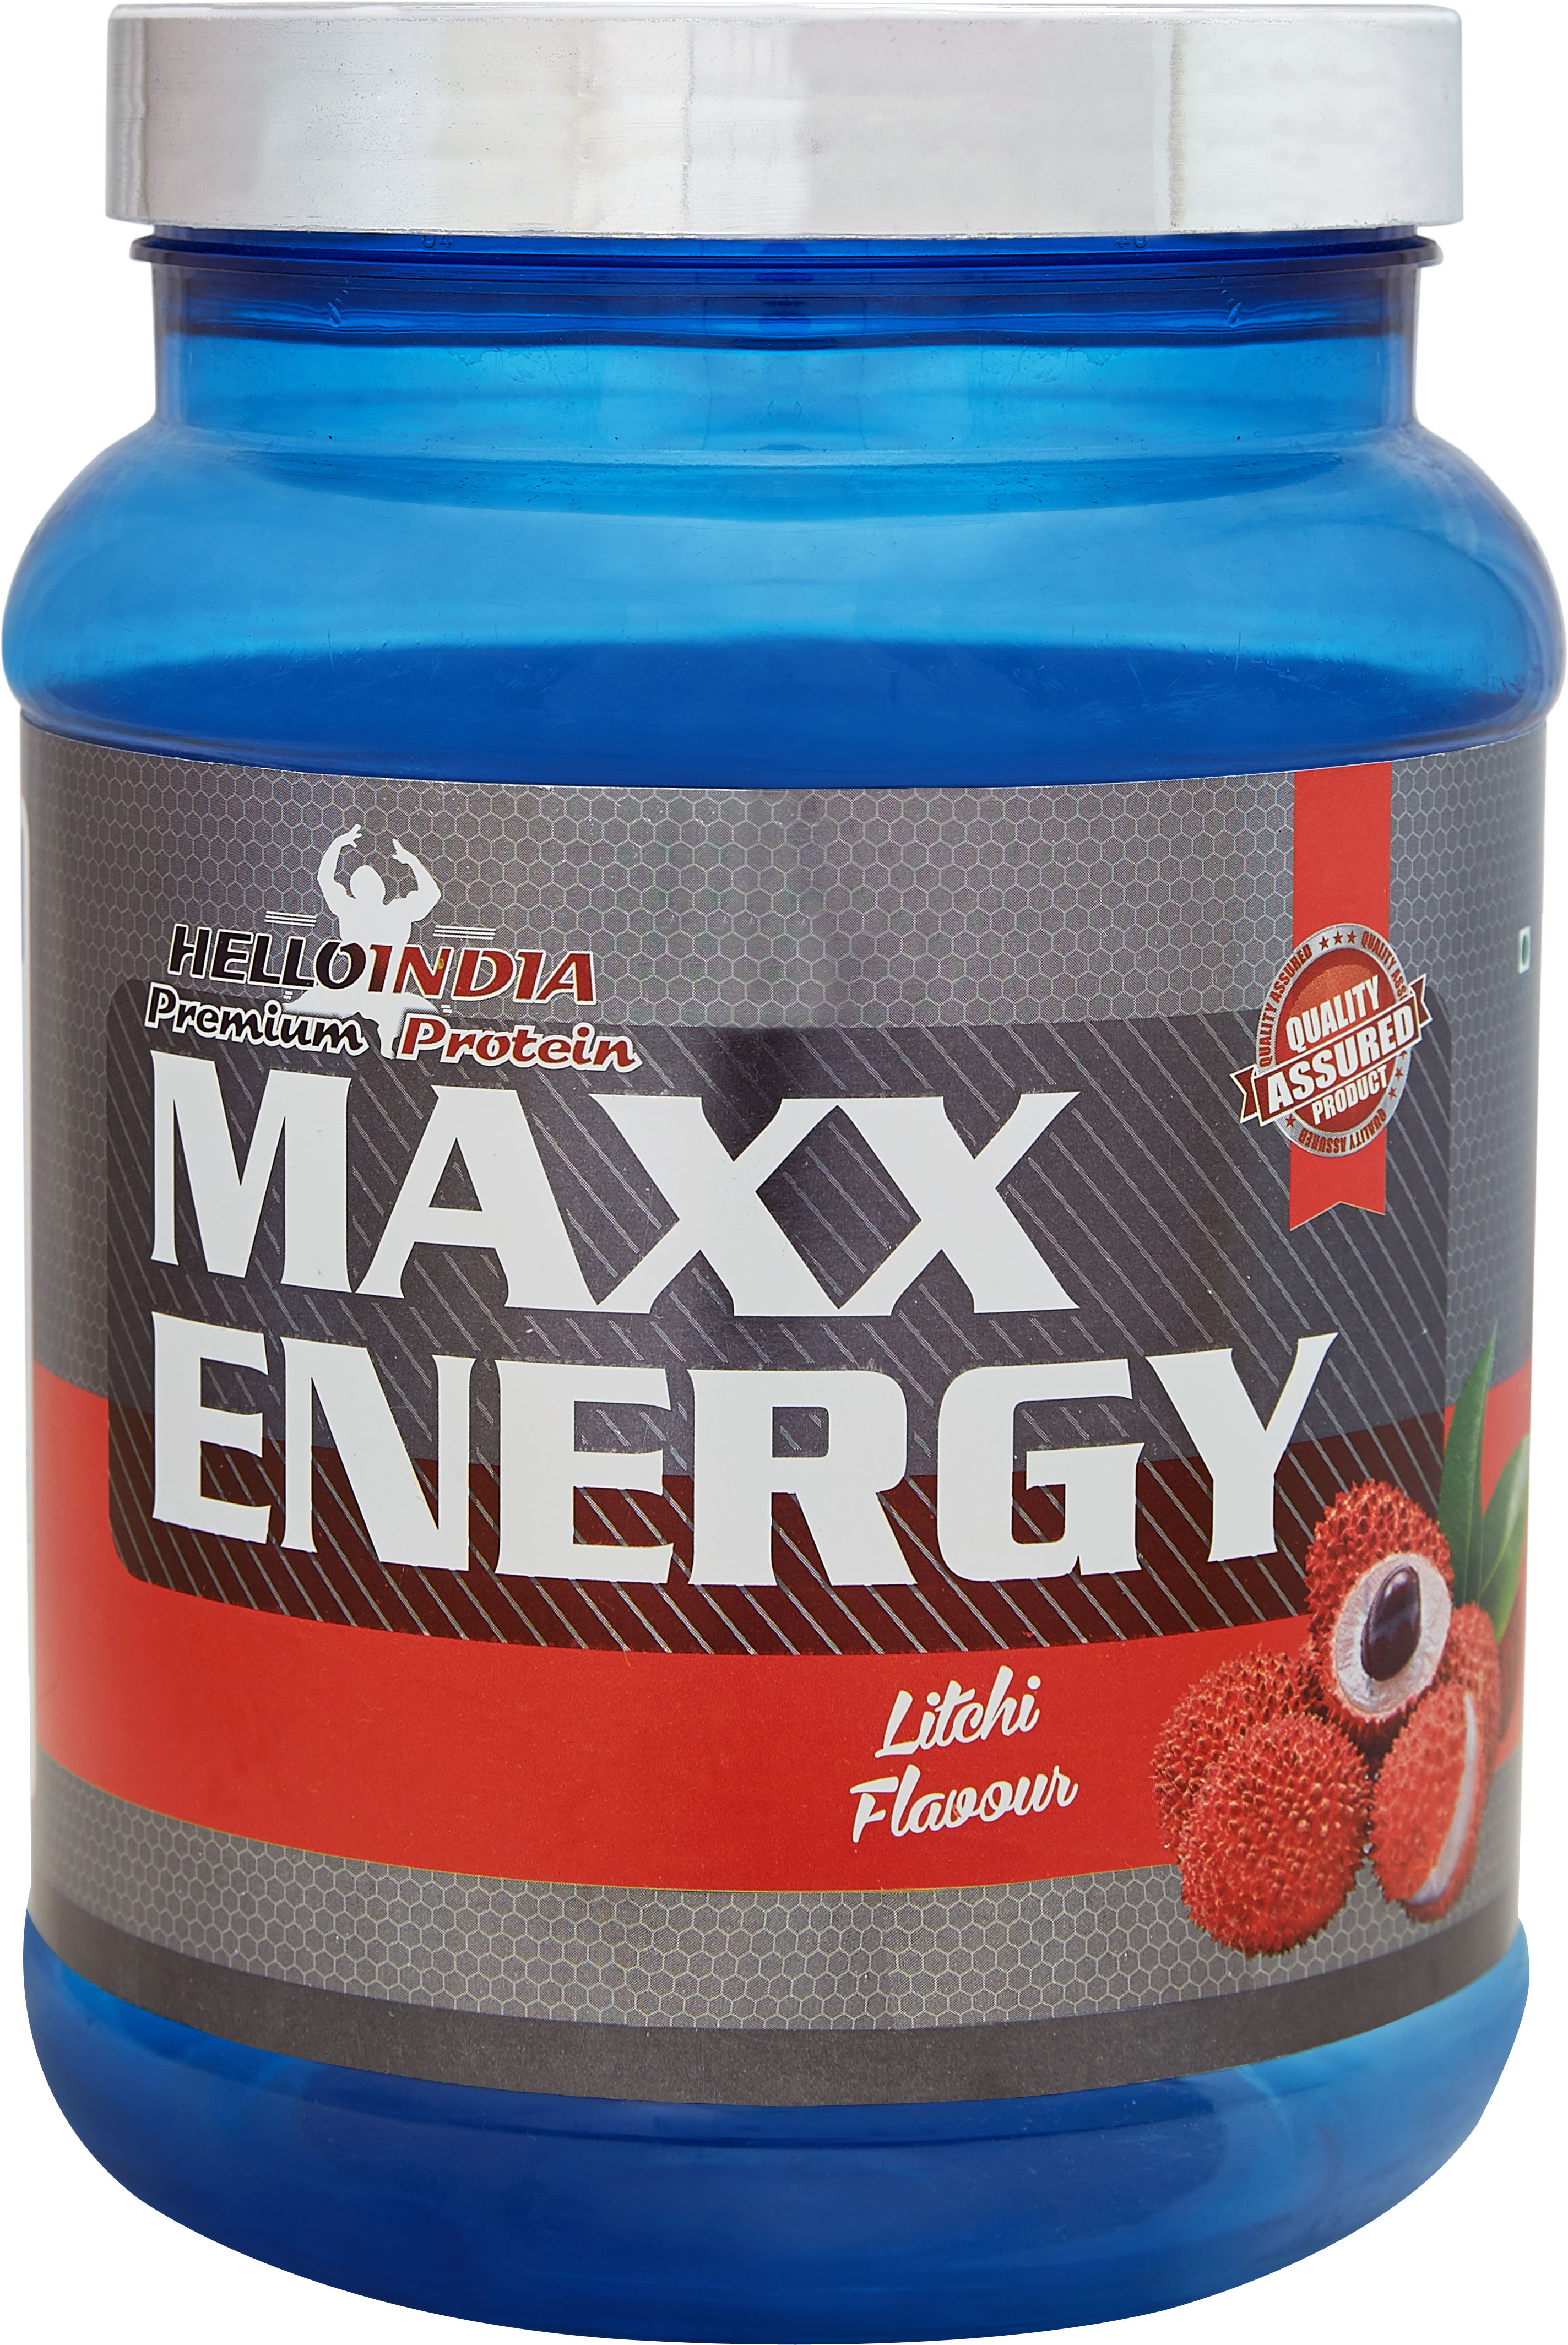 MAXX ENERGY